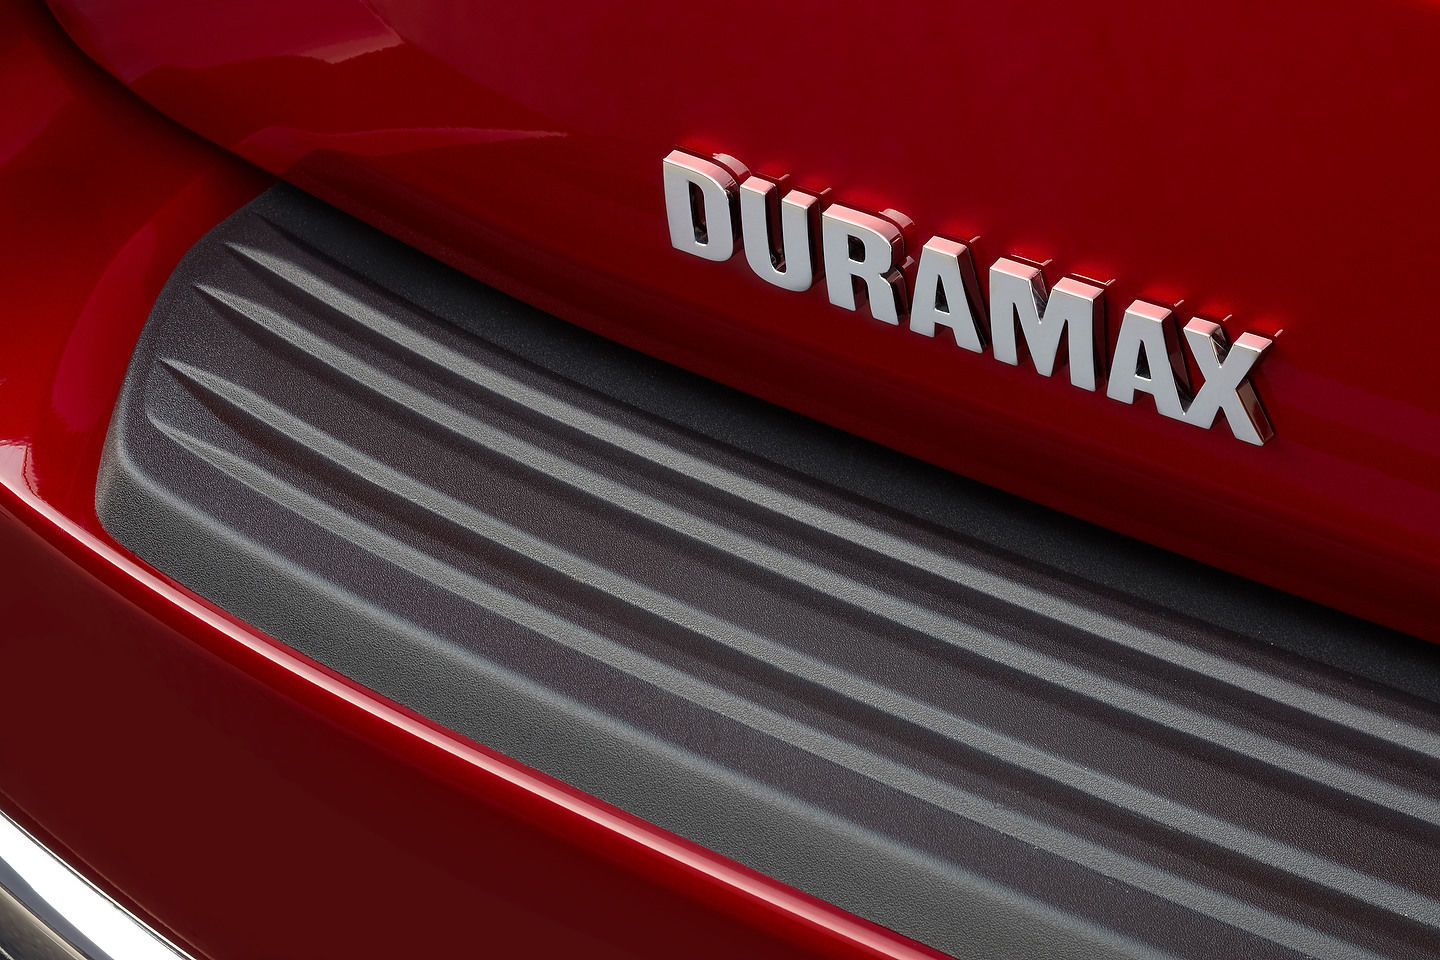 Duramax Diesel : deux mots magiques pour une foule de produits GM